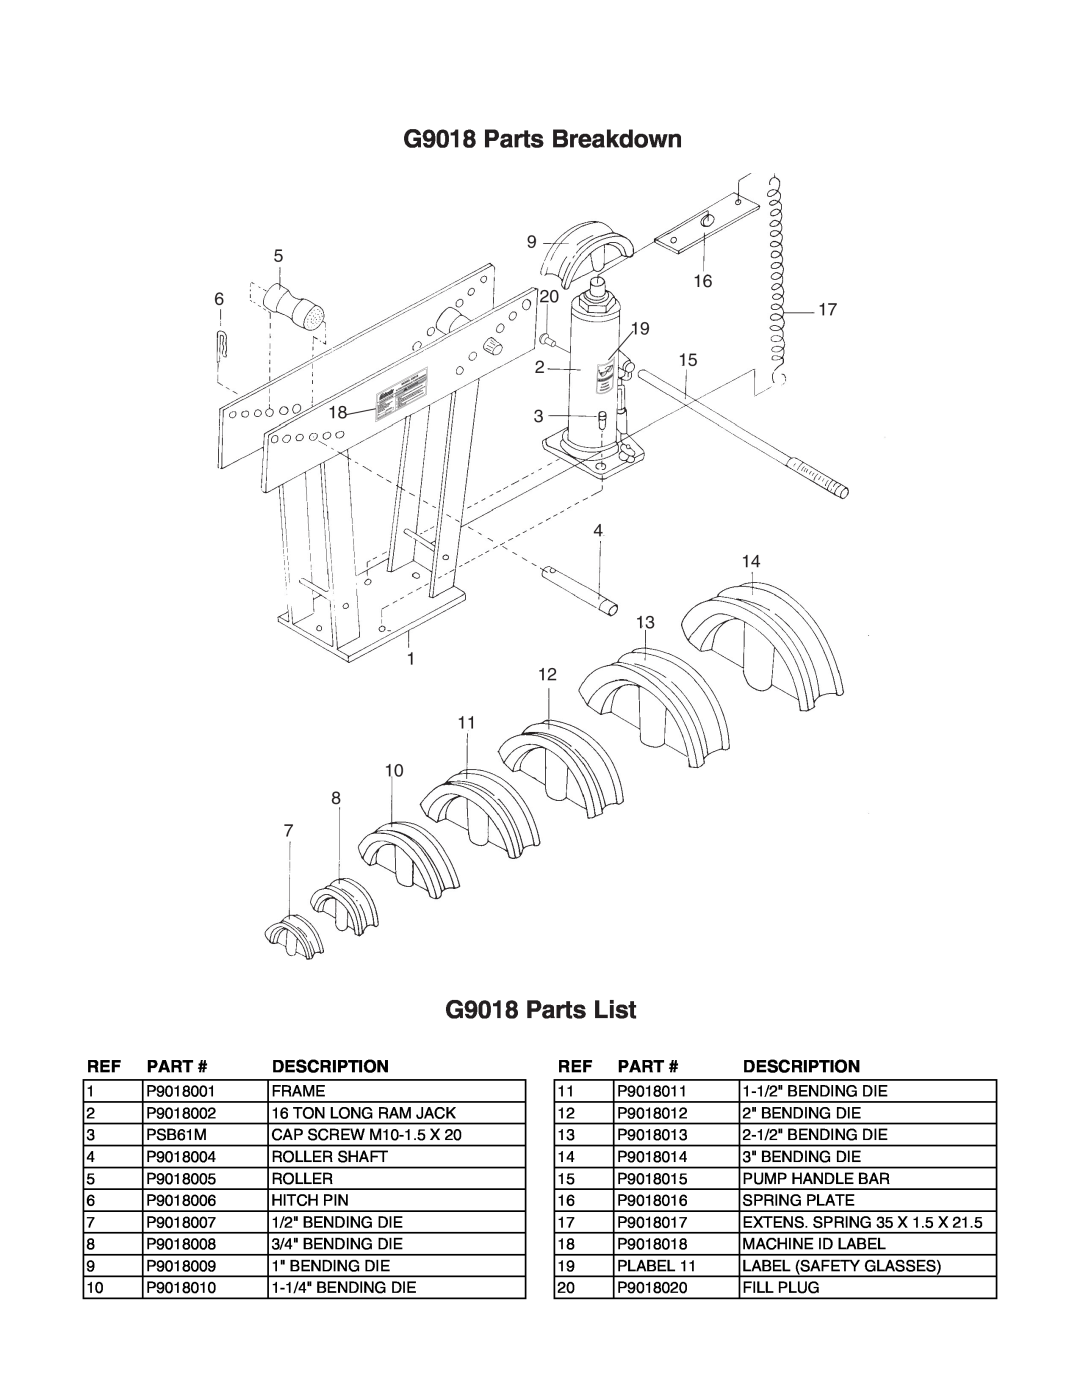 Grizzly G9017/G9018 manual G9018 Parts Breakdown, G9018 Parts List, Part #, Description 